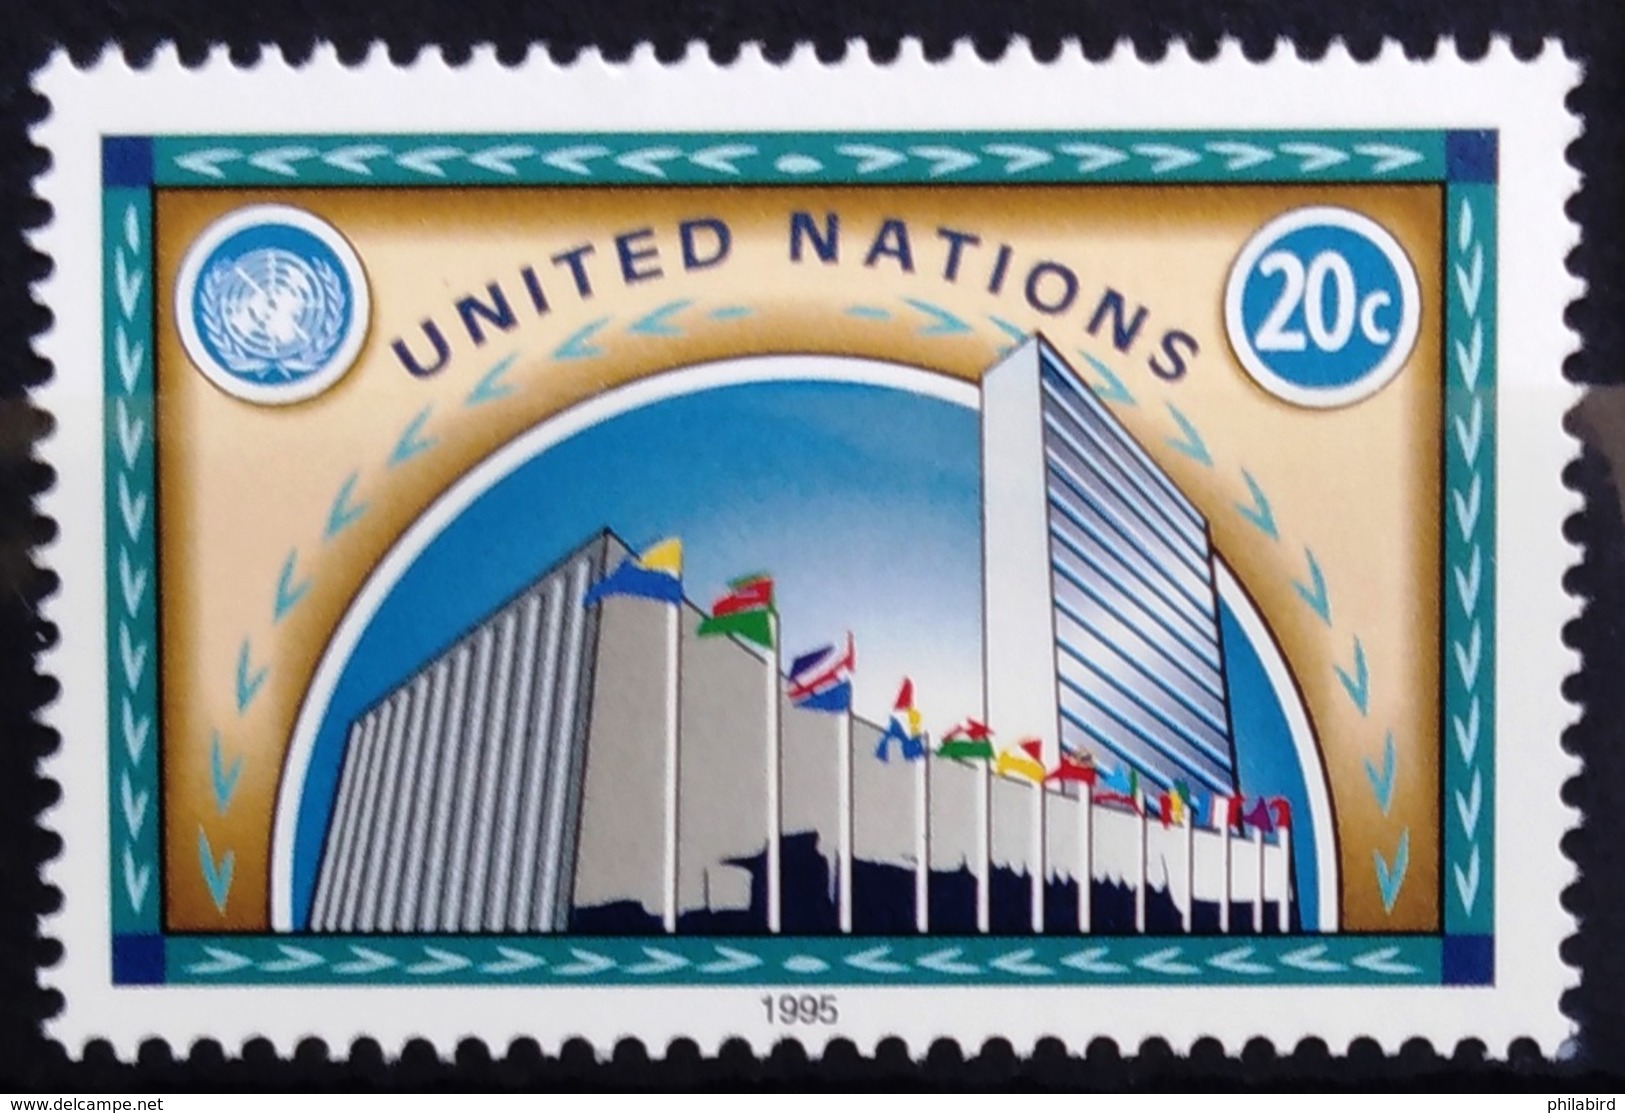 NATIONS-UNIS  NEW YORK                   N° 677                      NEUF** - Ungebraucht